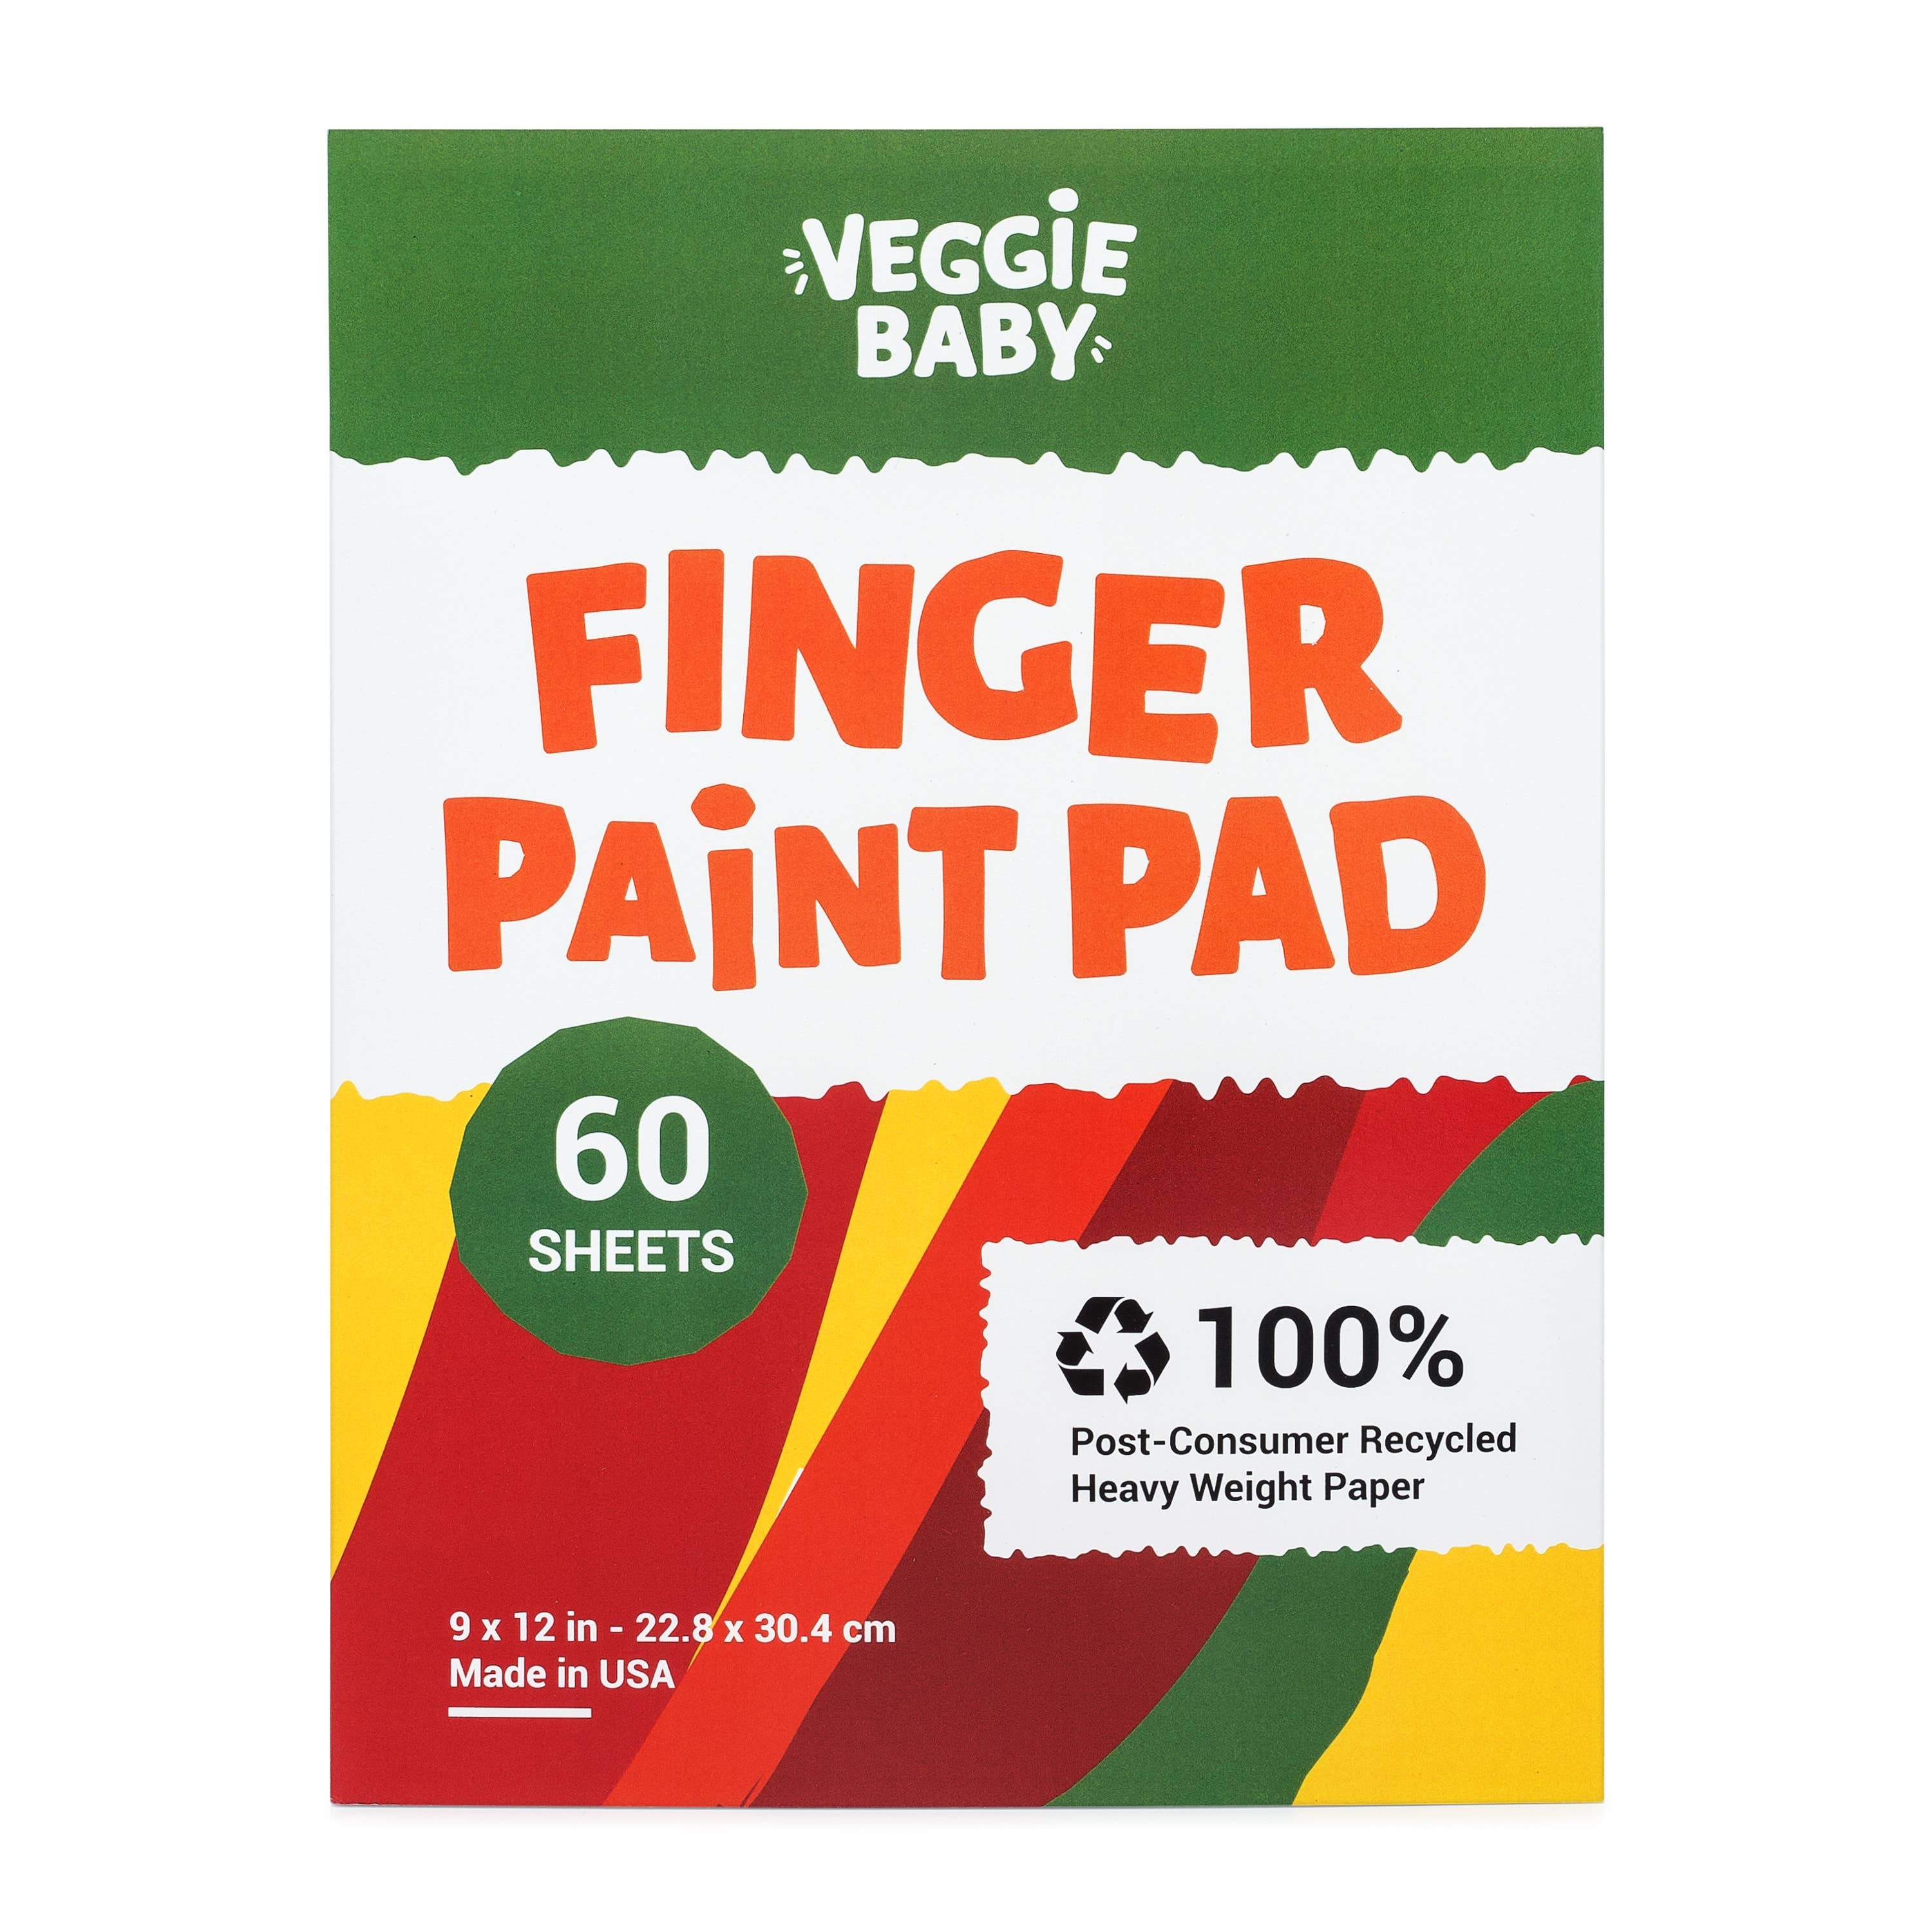 Jr Jumbo Finger Paint Paper Pad